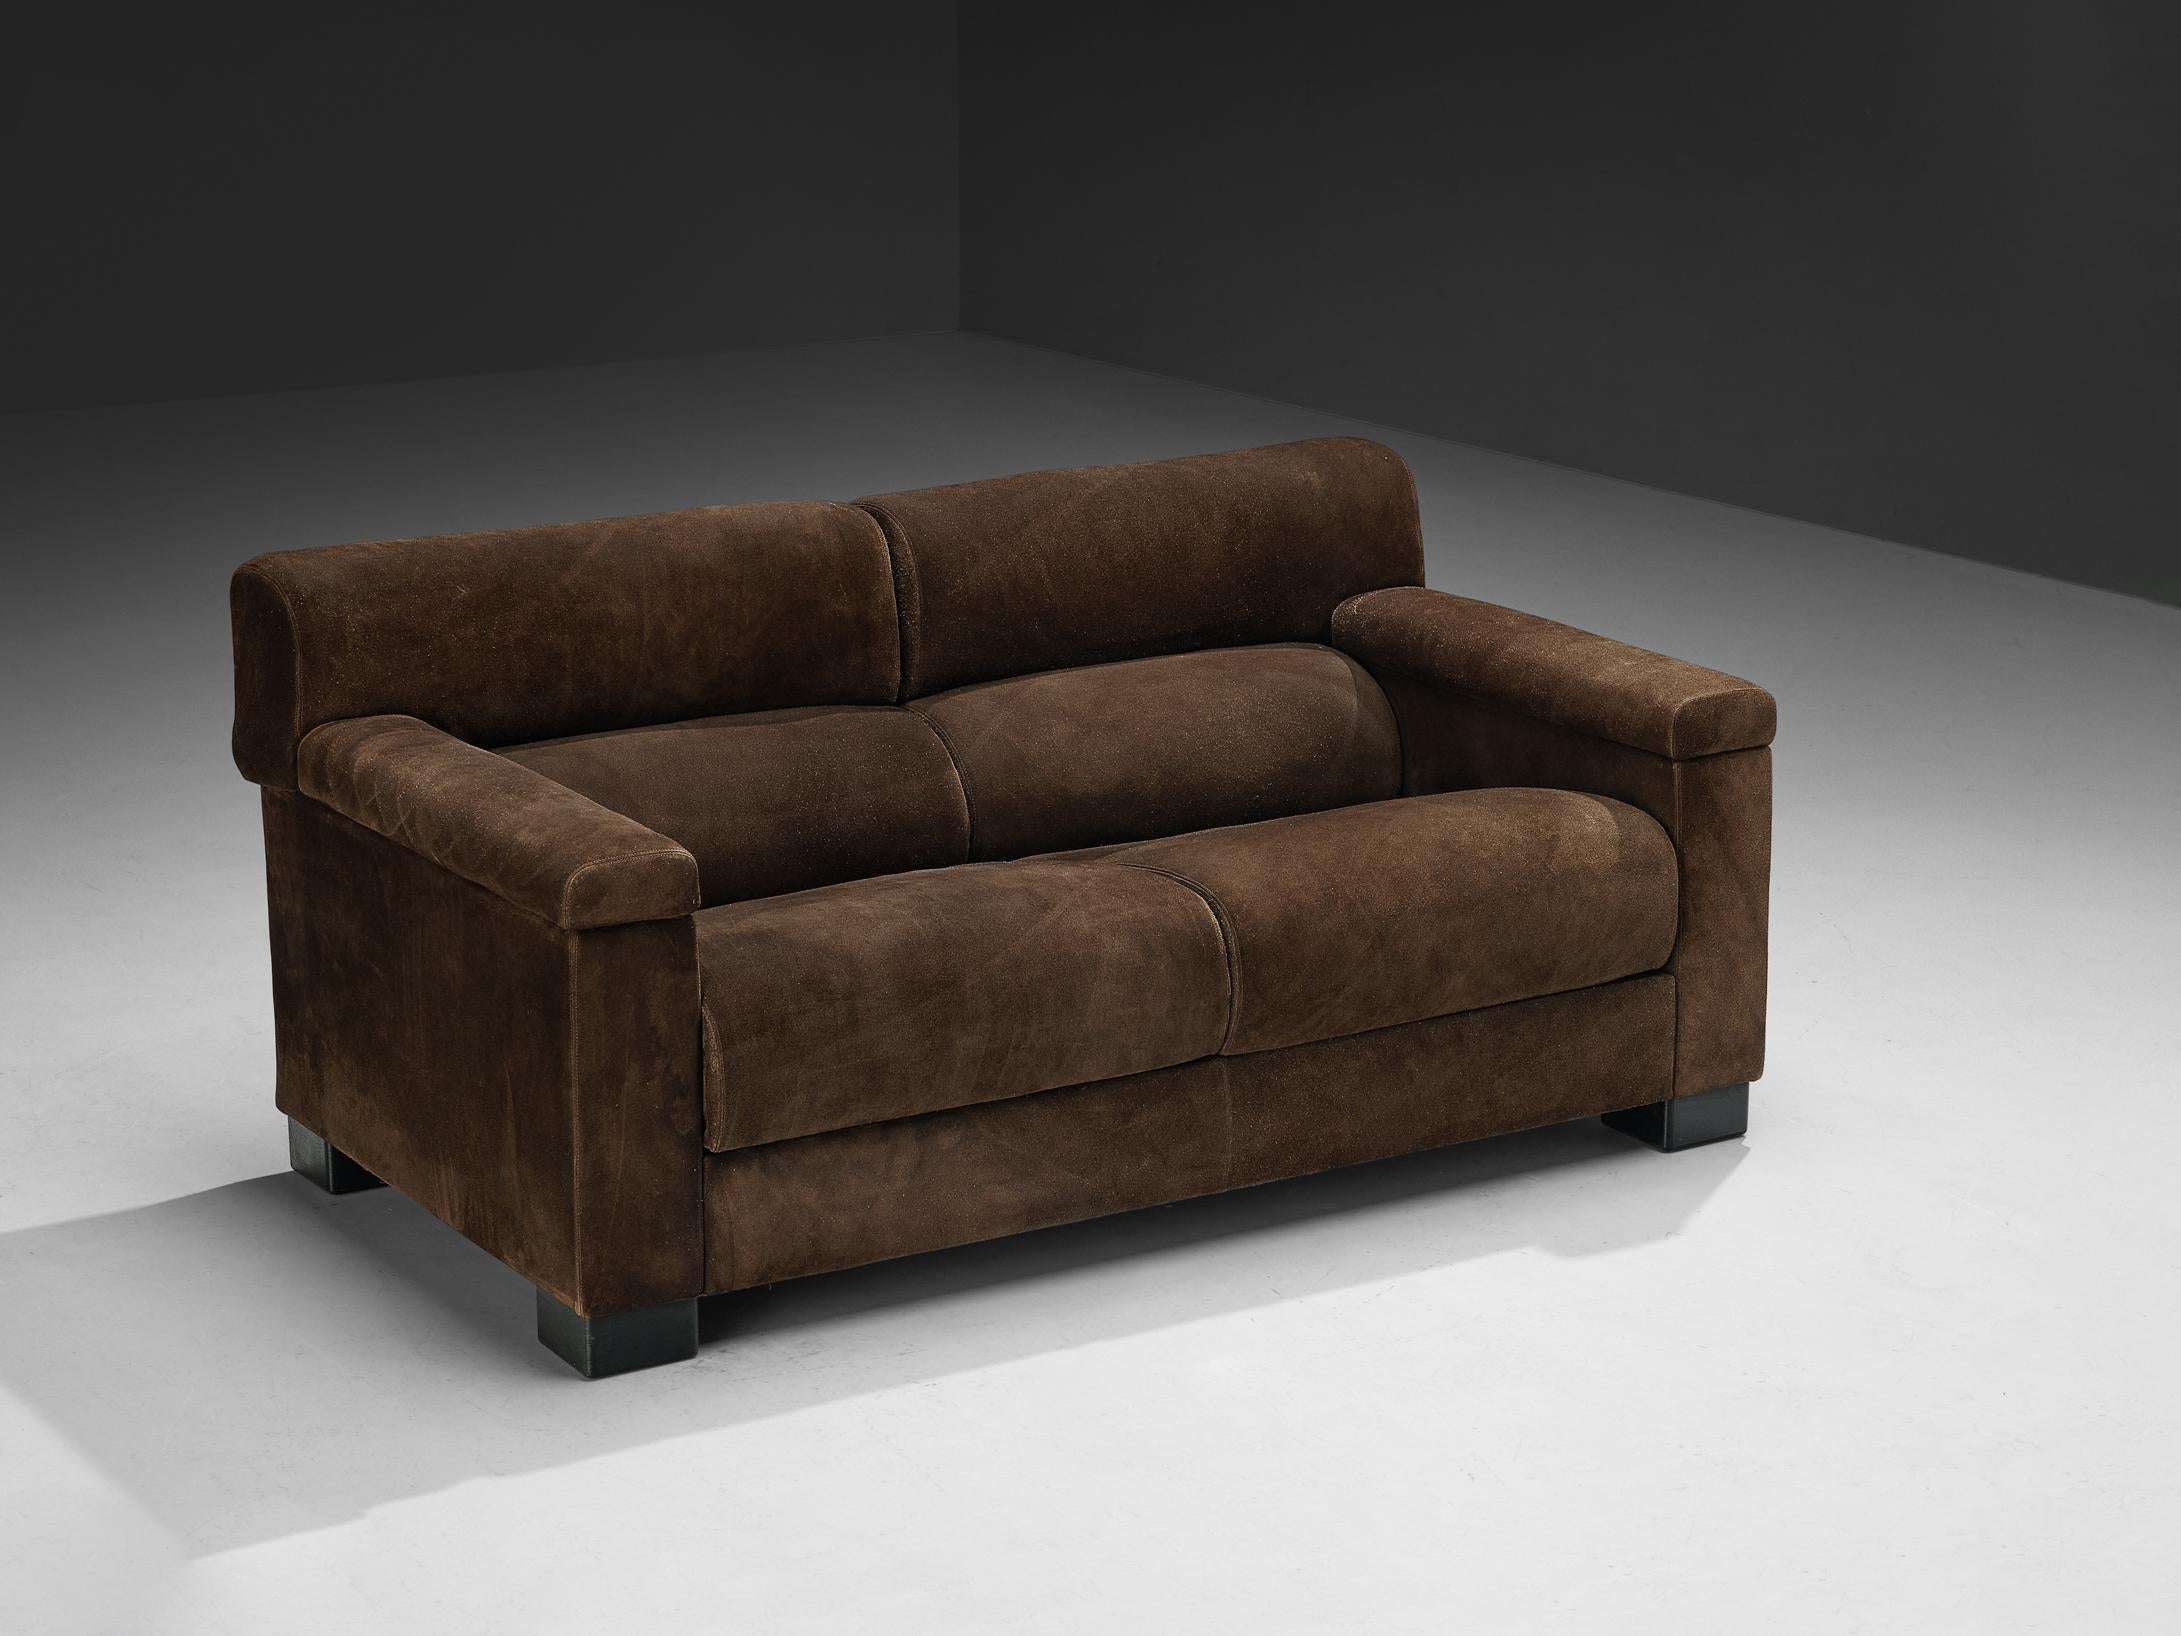 Tecno, canapé, daim, bois teinté foncé, Italie, années 1960. 

Un canapé substantiel et de grande taille produit par l'entreprise italienne de meubles Tecno. L'aspect volumineux est amplifié par la sellerie, qui se compose d'un revêtement en daim